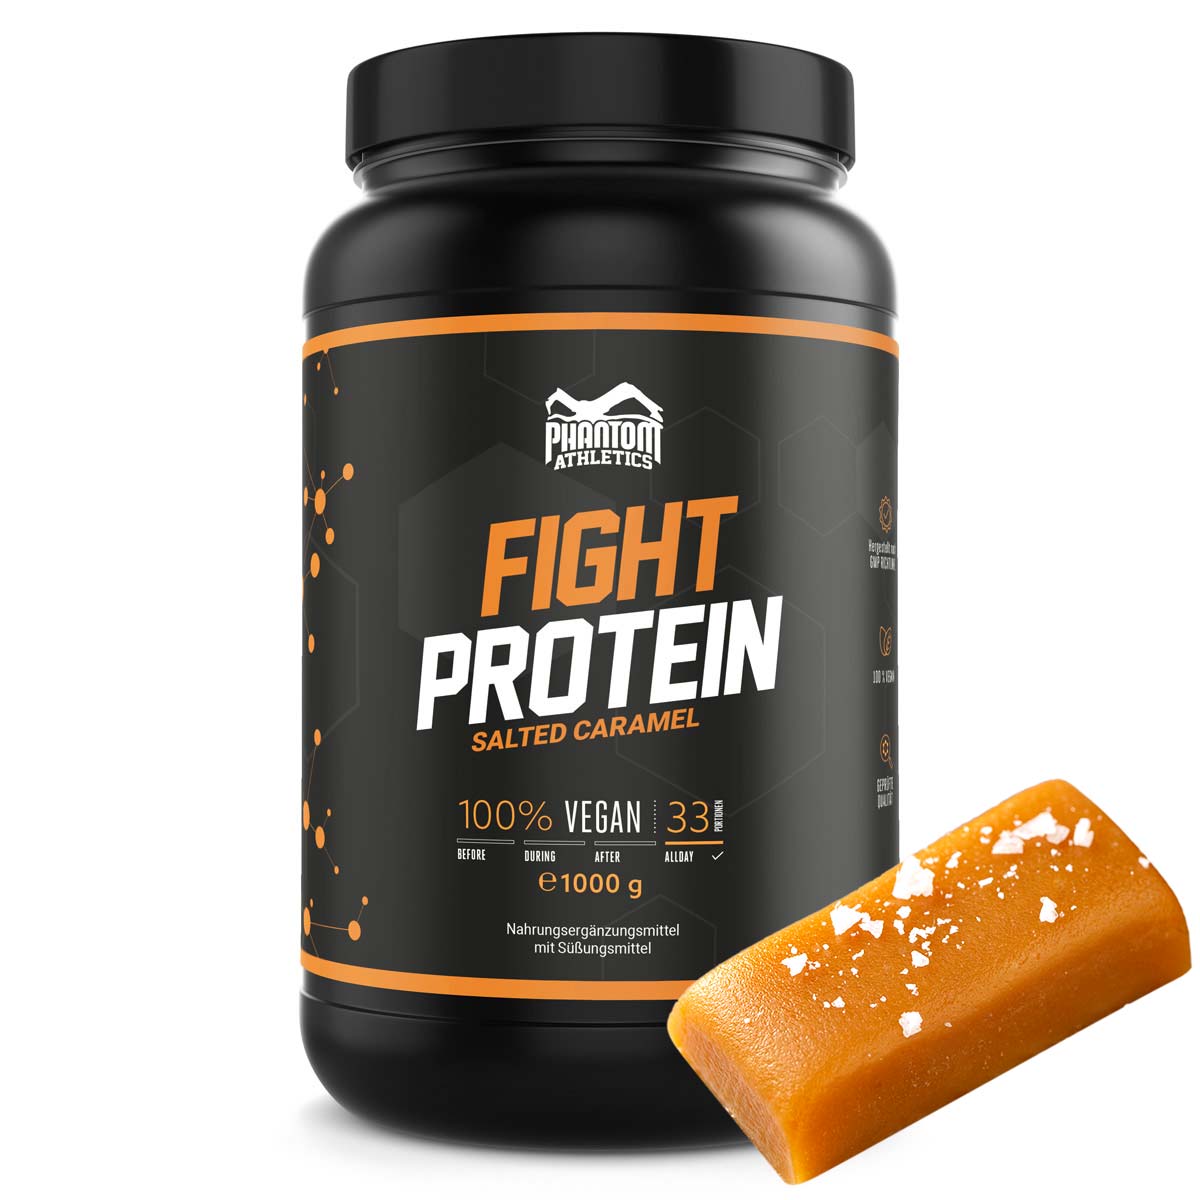 Phantom FIGHT protein za borilačke vještine s okusom slane karamele.